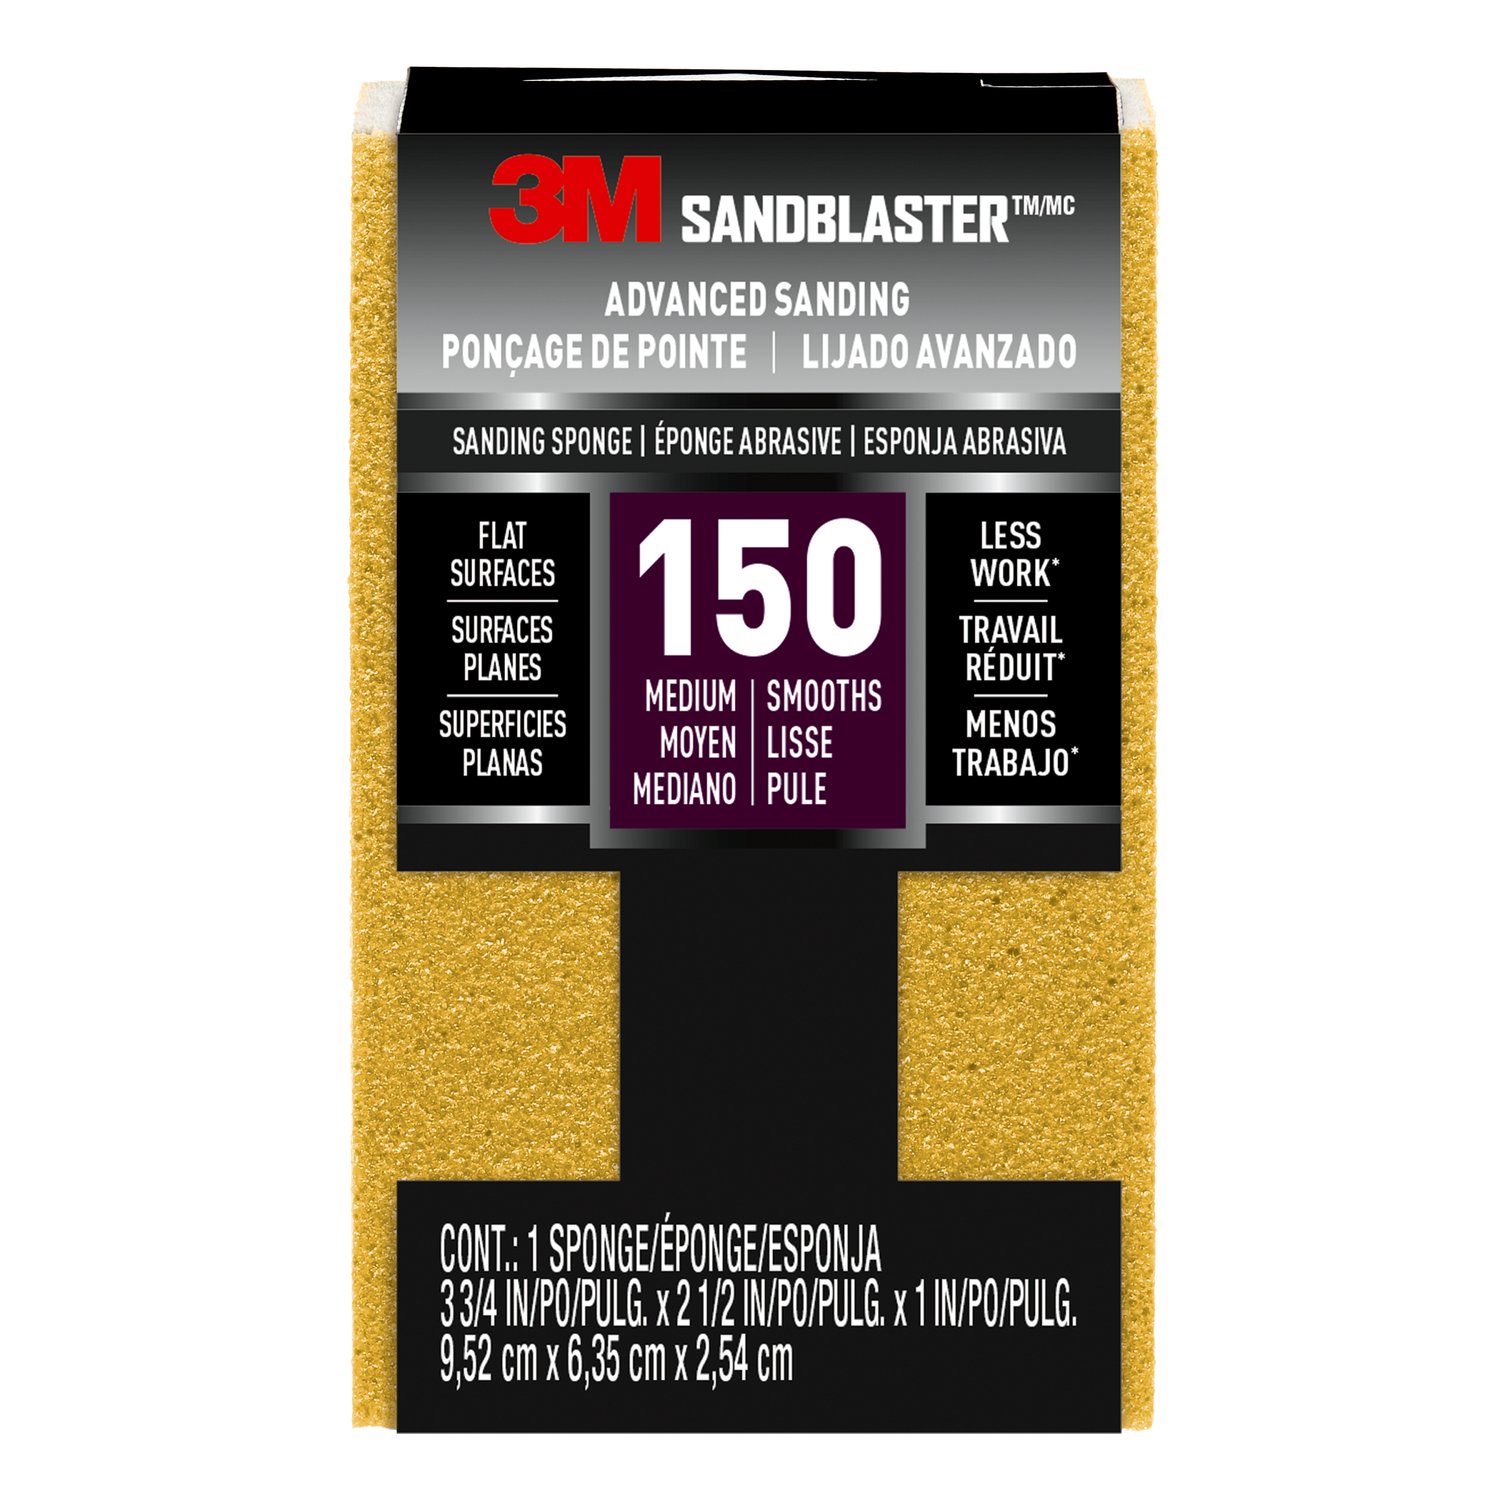 7100015174 - 3M SandBlaster Advanced Sanding Sanding Sponge, 20908-150 ,150 grit, 3
3/4 in x 2 1/2 x 1 in, 1/pk